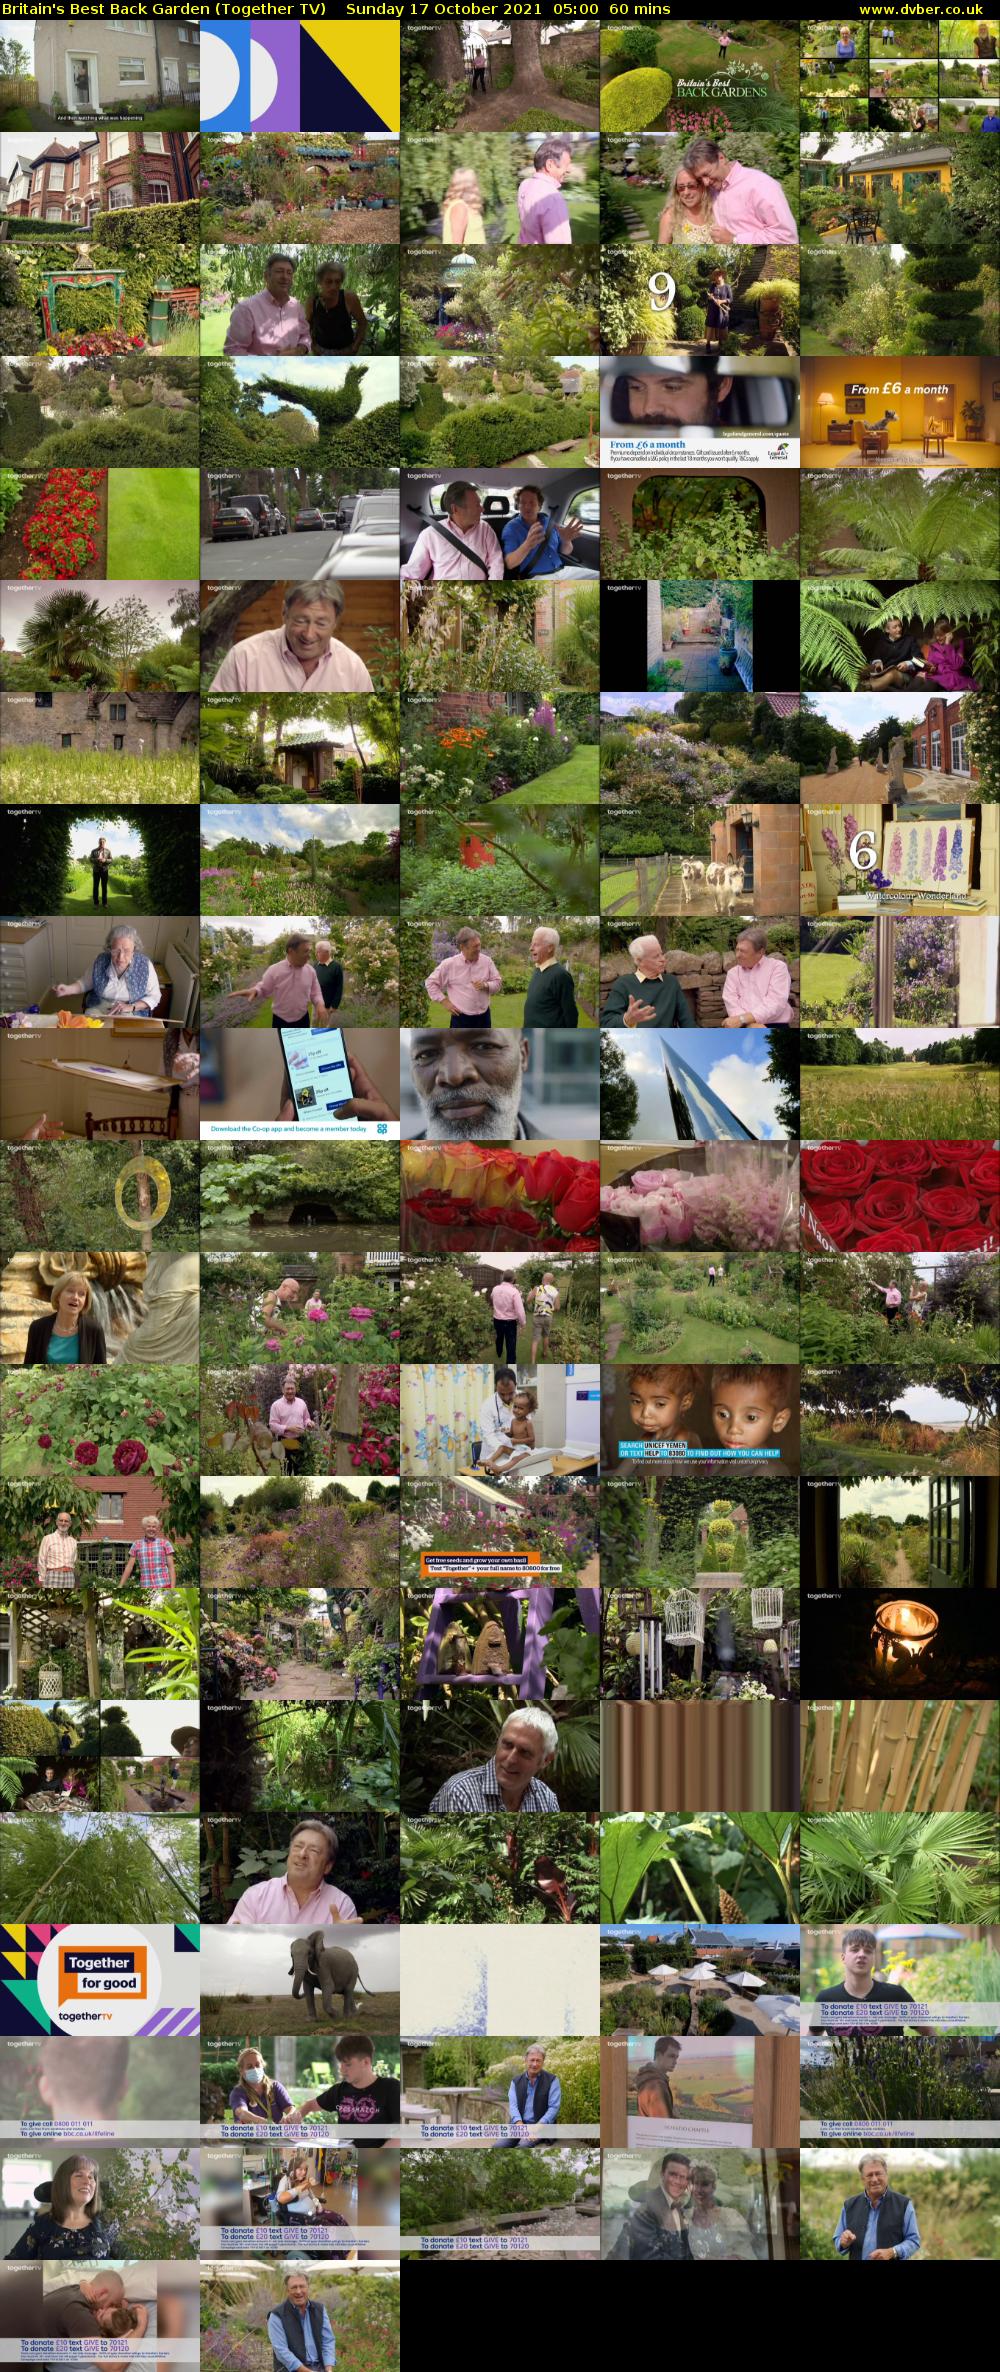 Britain's Best Back Garden (Together TV) Sunday 17 October 2021 05:00 - 06:00